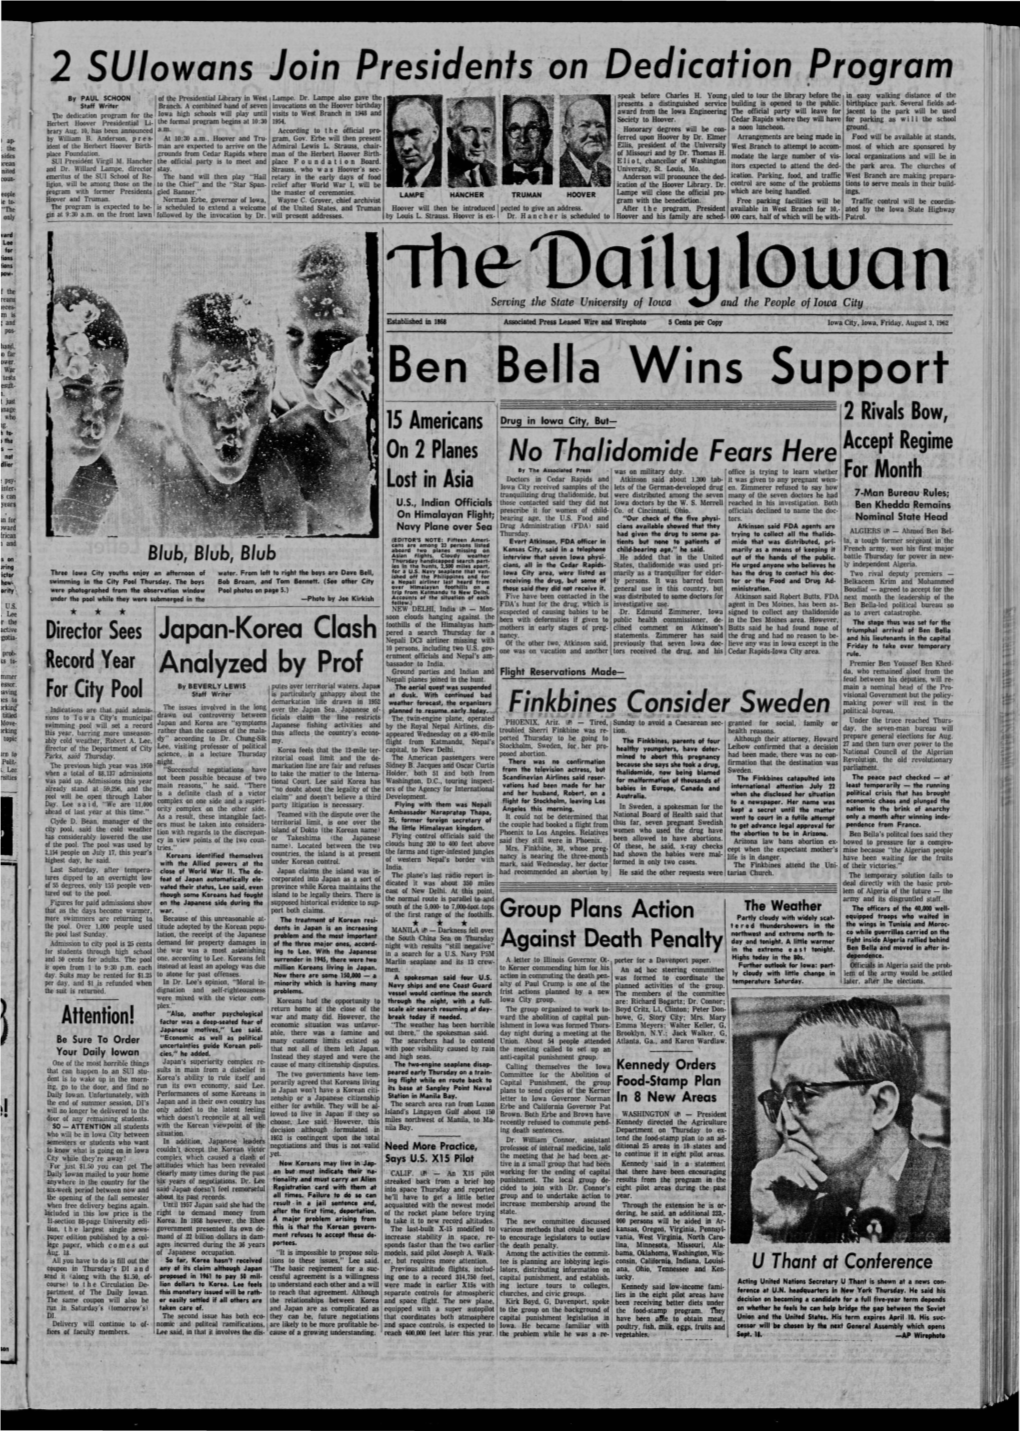 Daily Iowan (Iowa City, Iowa), 1962-08-03